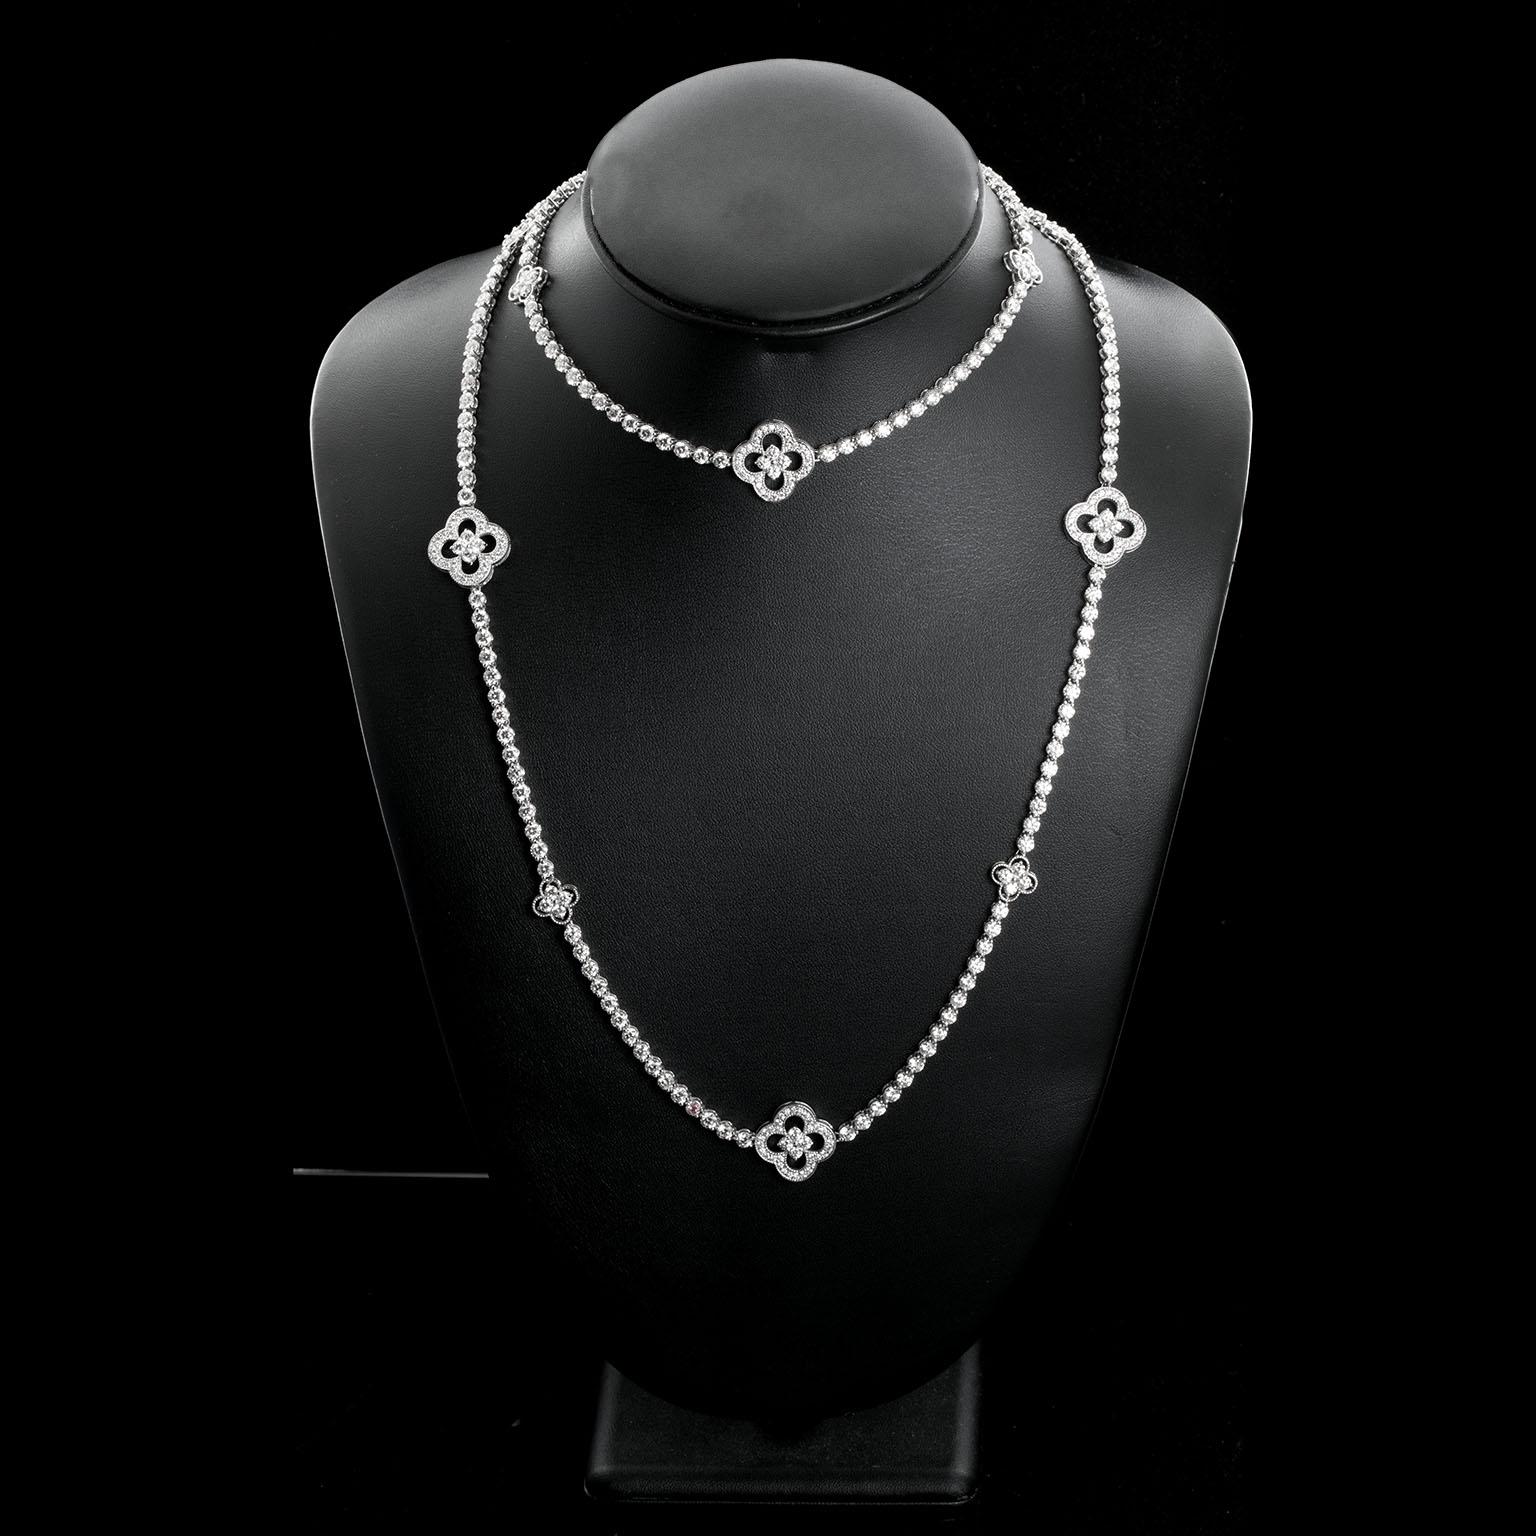 .33 carat diamond necklace